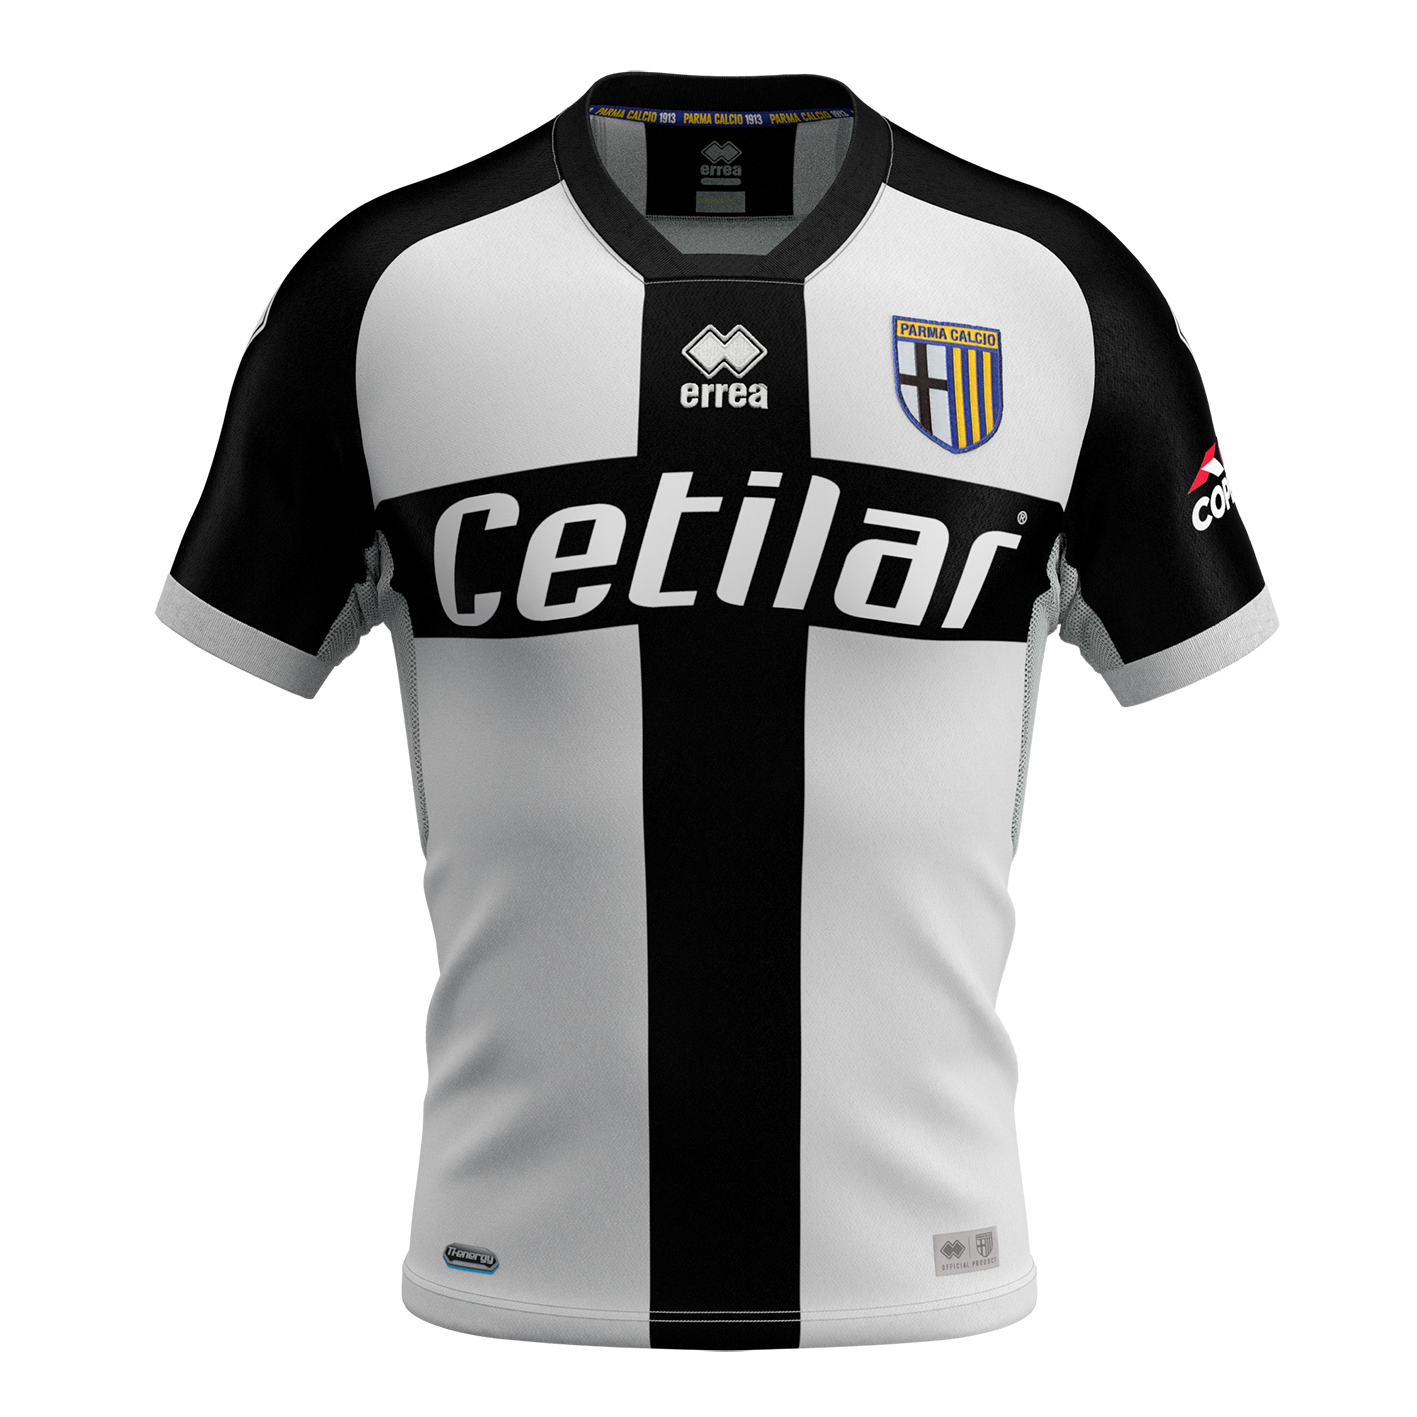 Parma Calcio 2020/21 home kit by Errea Forza27